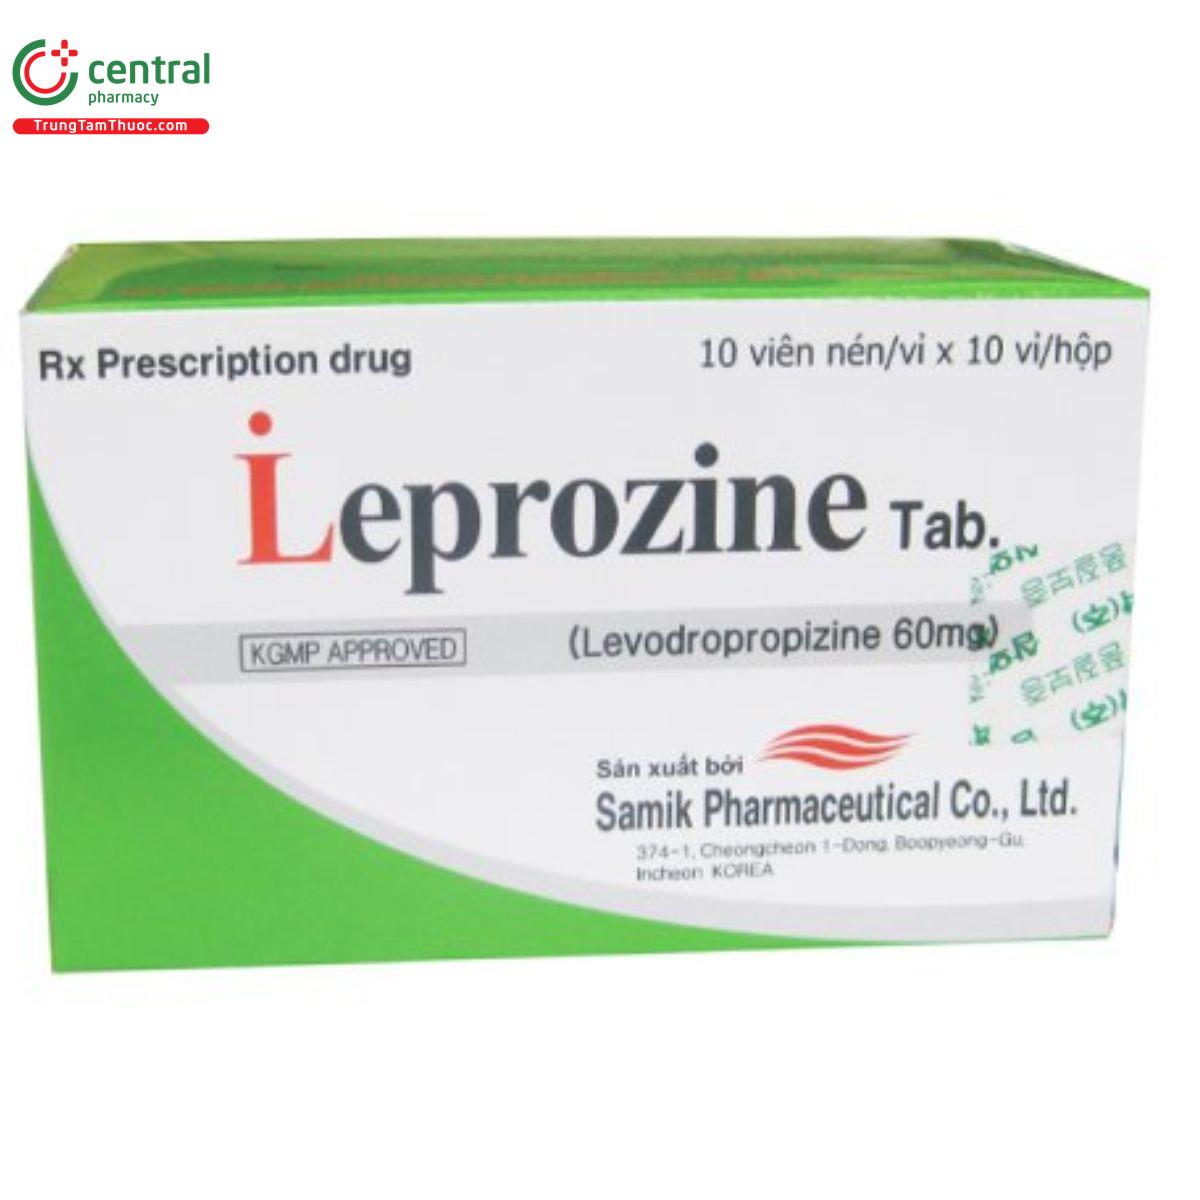 leprozine tab 1 C1487